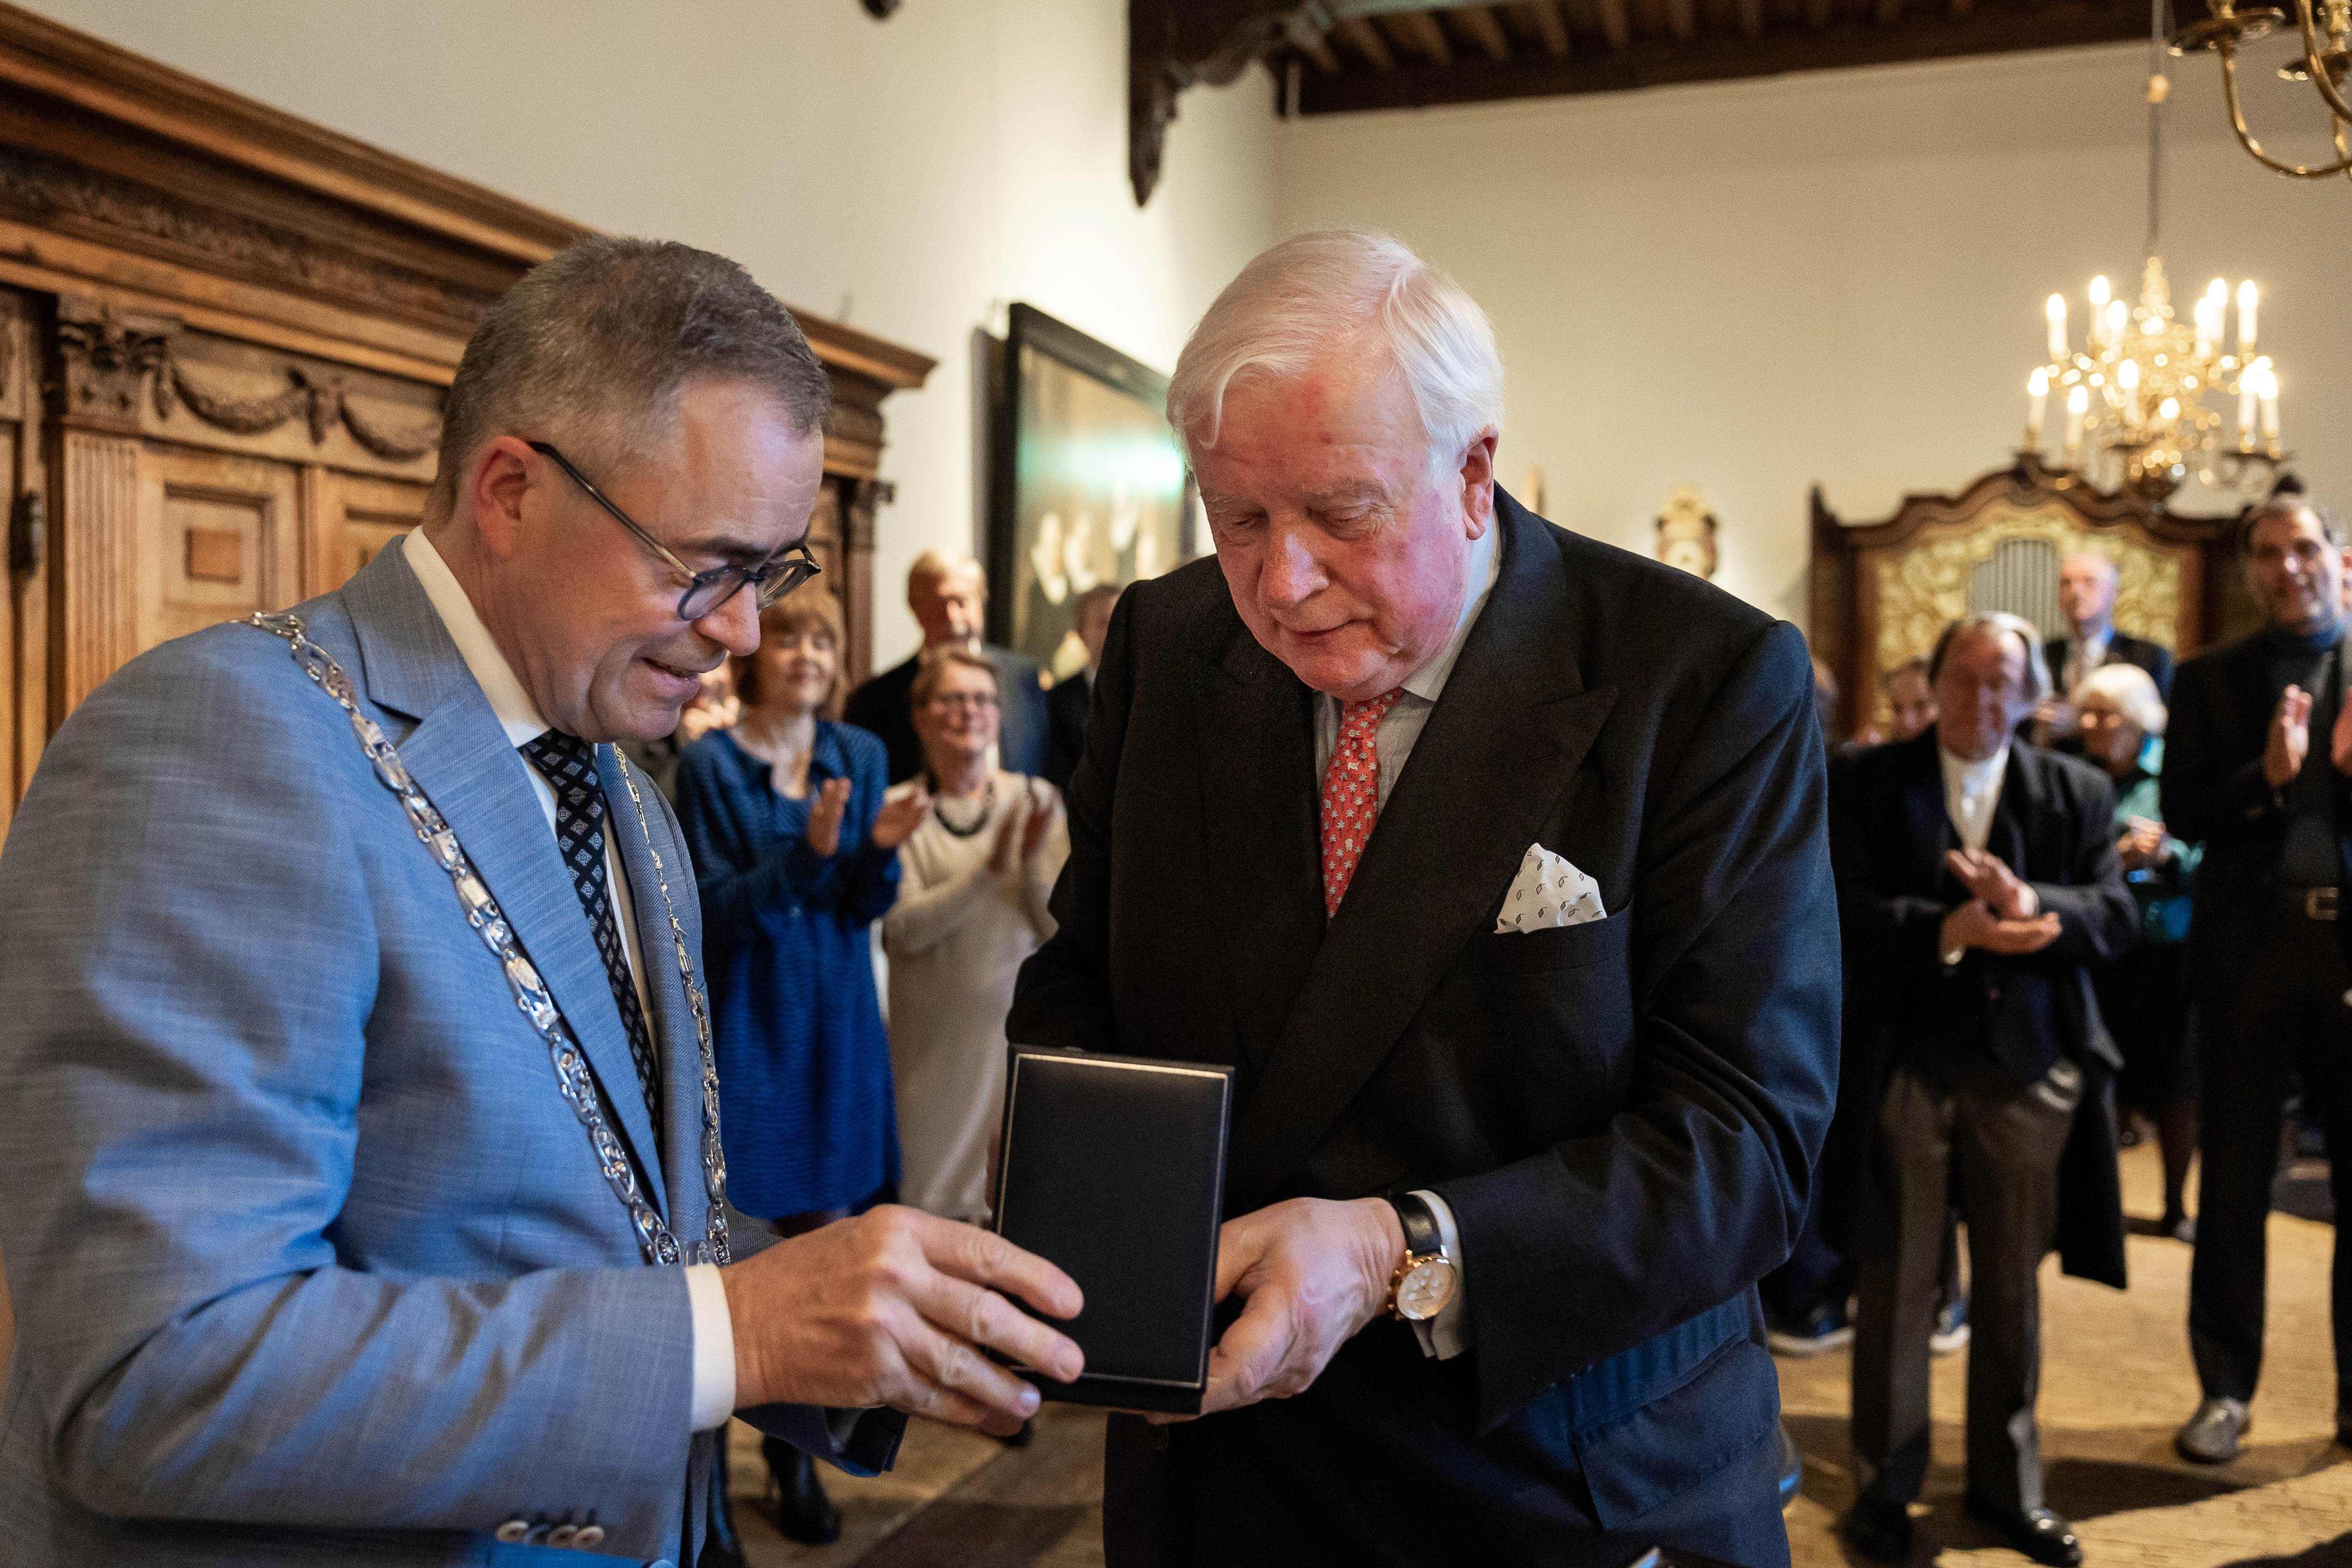 Penning van Verdienste medal of the City of Haarlem presented to Frans Corpeleijn by Mayor Jos Wienen at Frans Hals Museum.